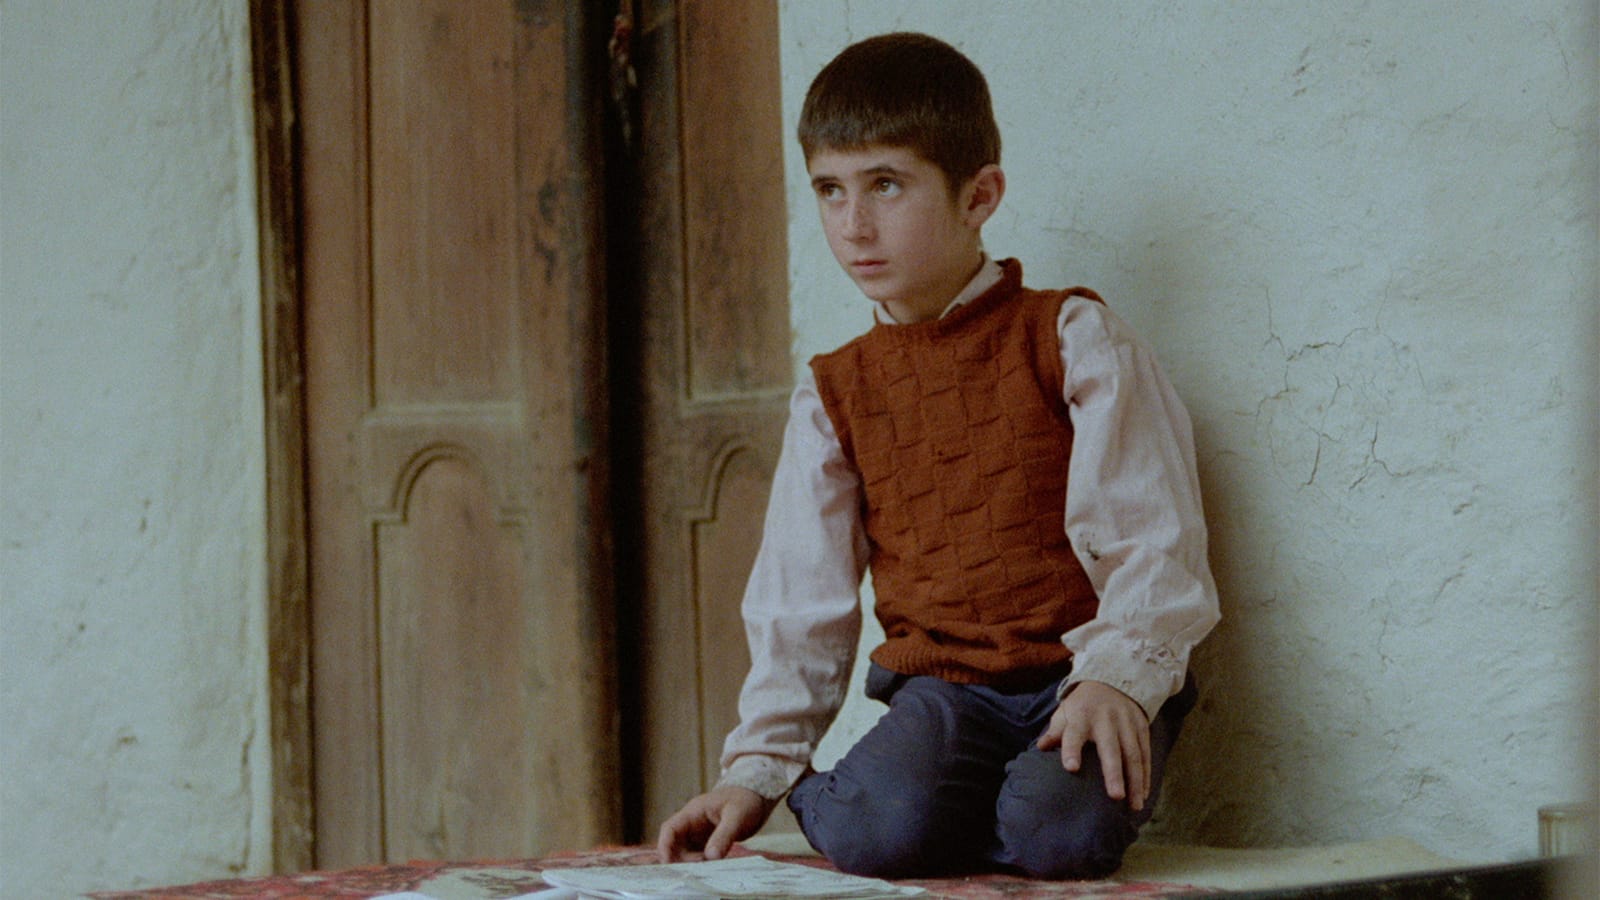 Bilde fra filmen - en liten gutt